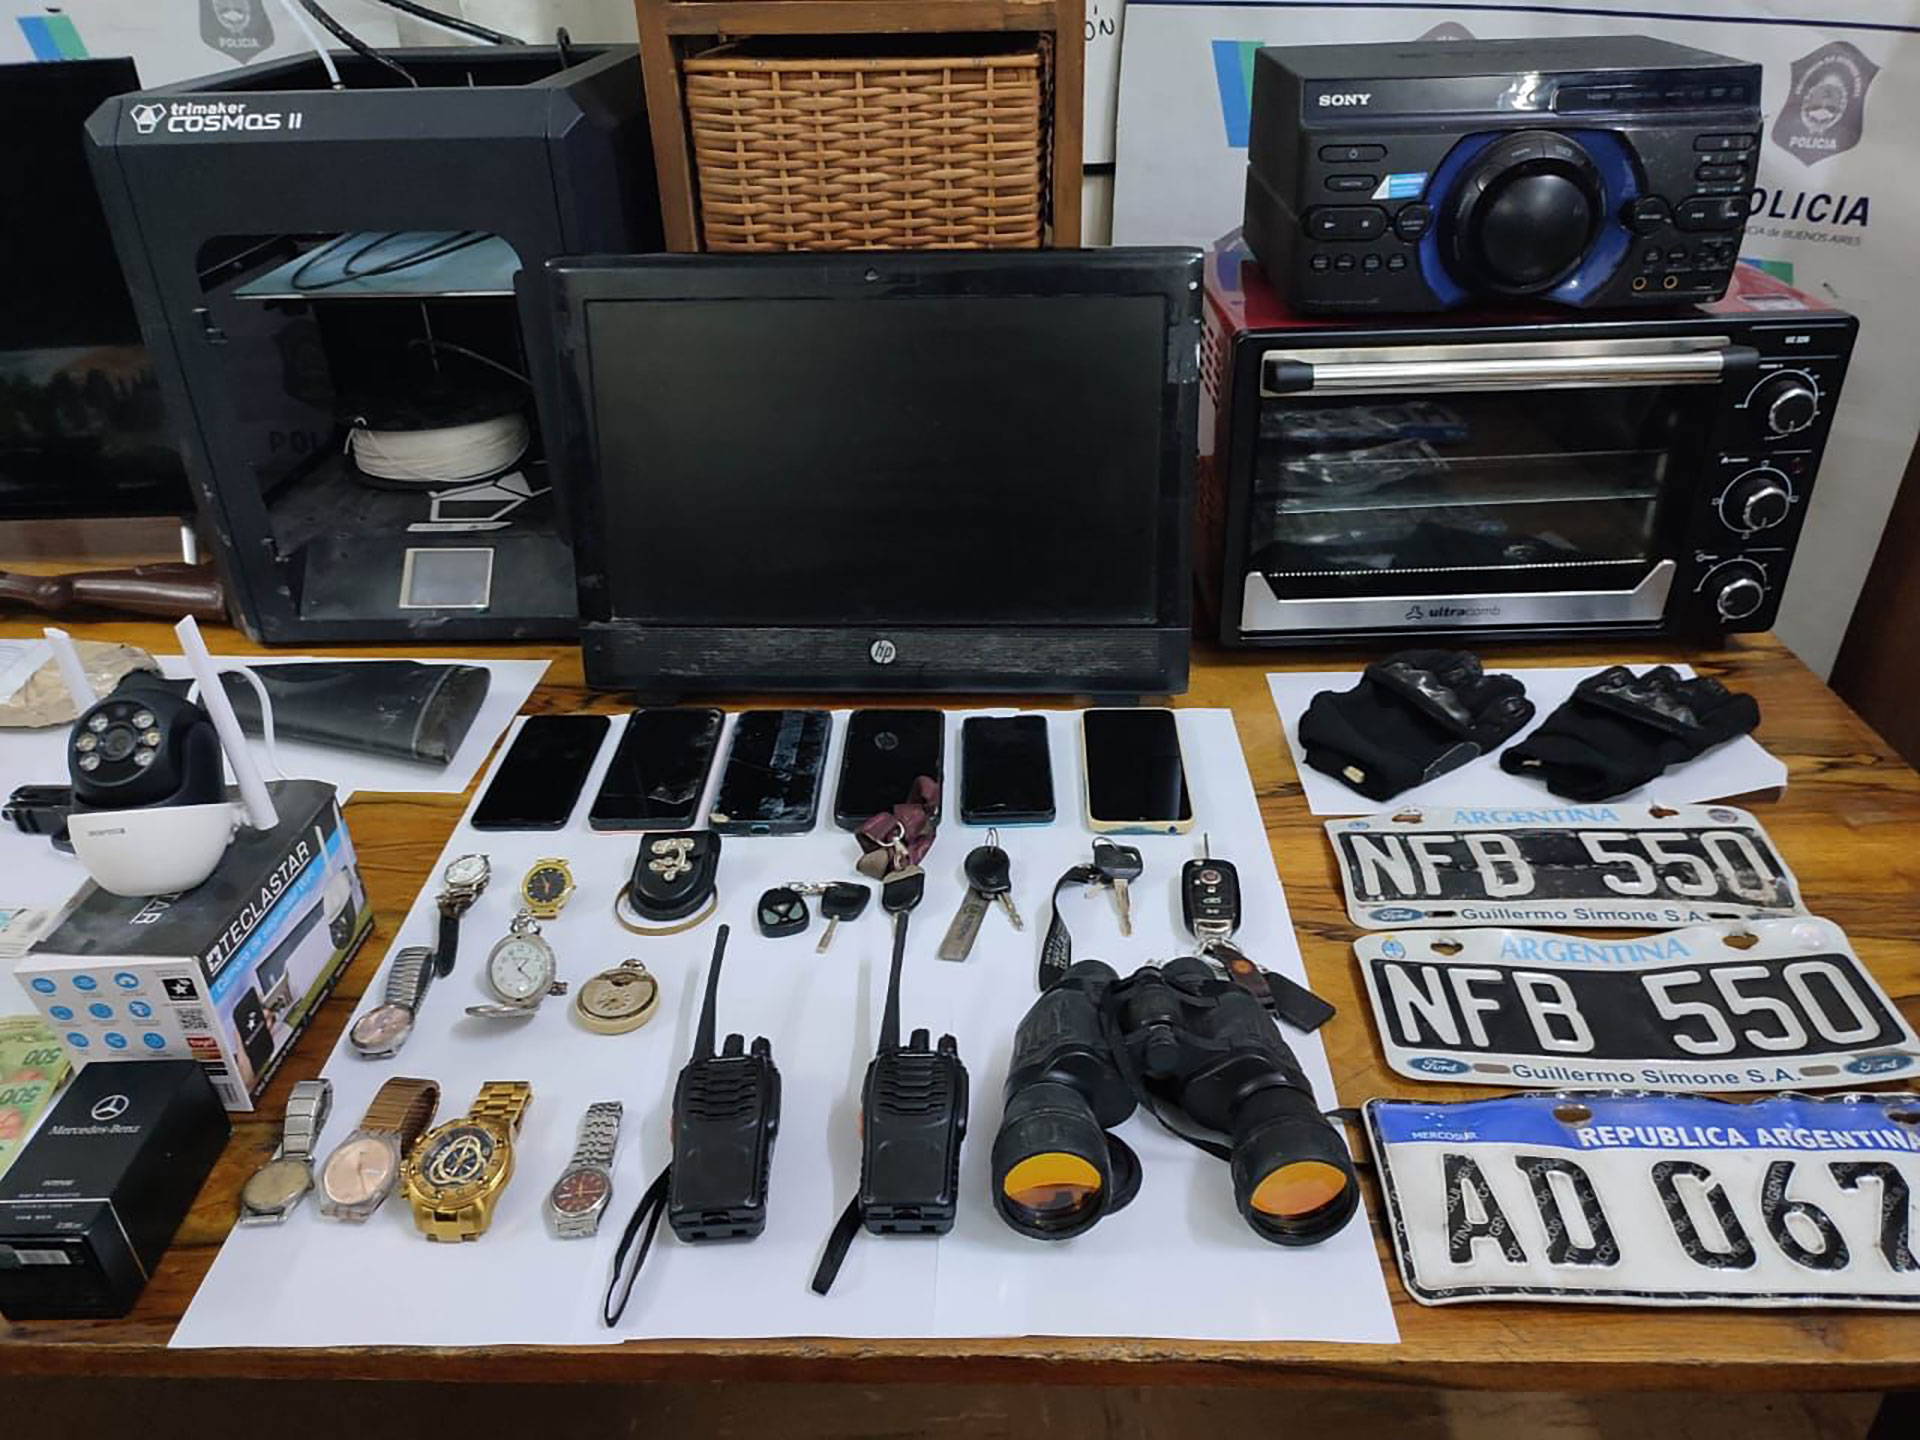 Algunos de los objetos que guardaban los delincuentes en su depósito ubicado en La Plata